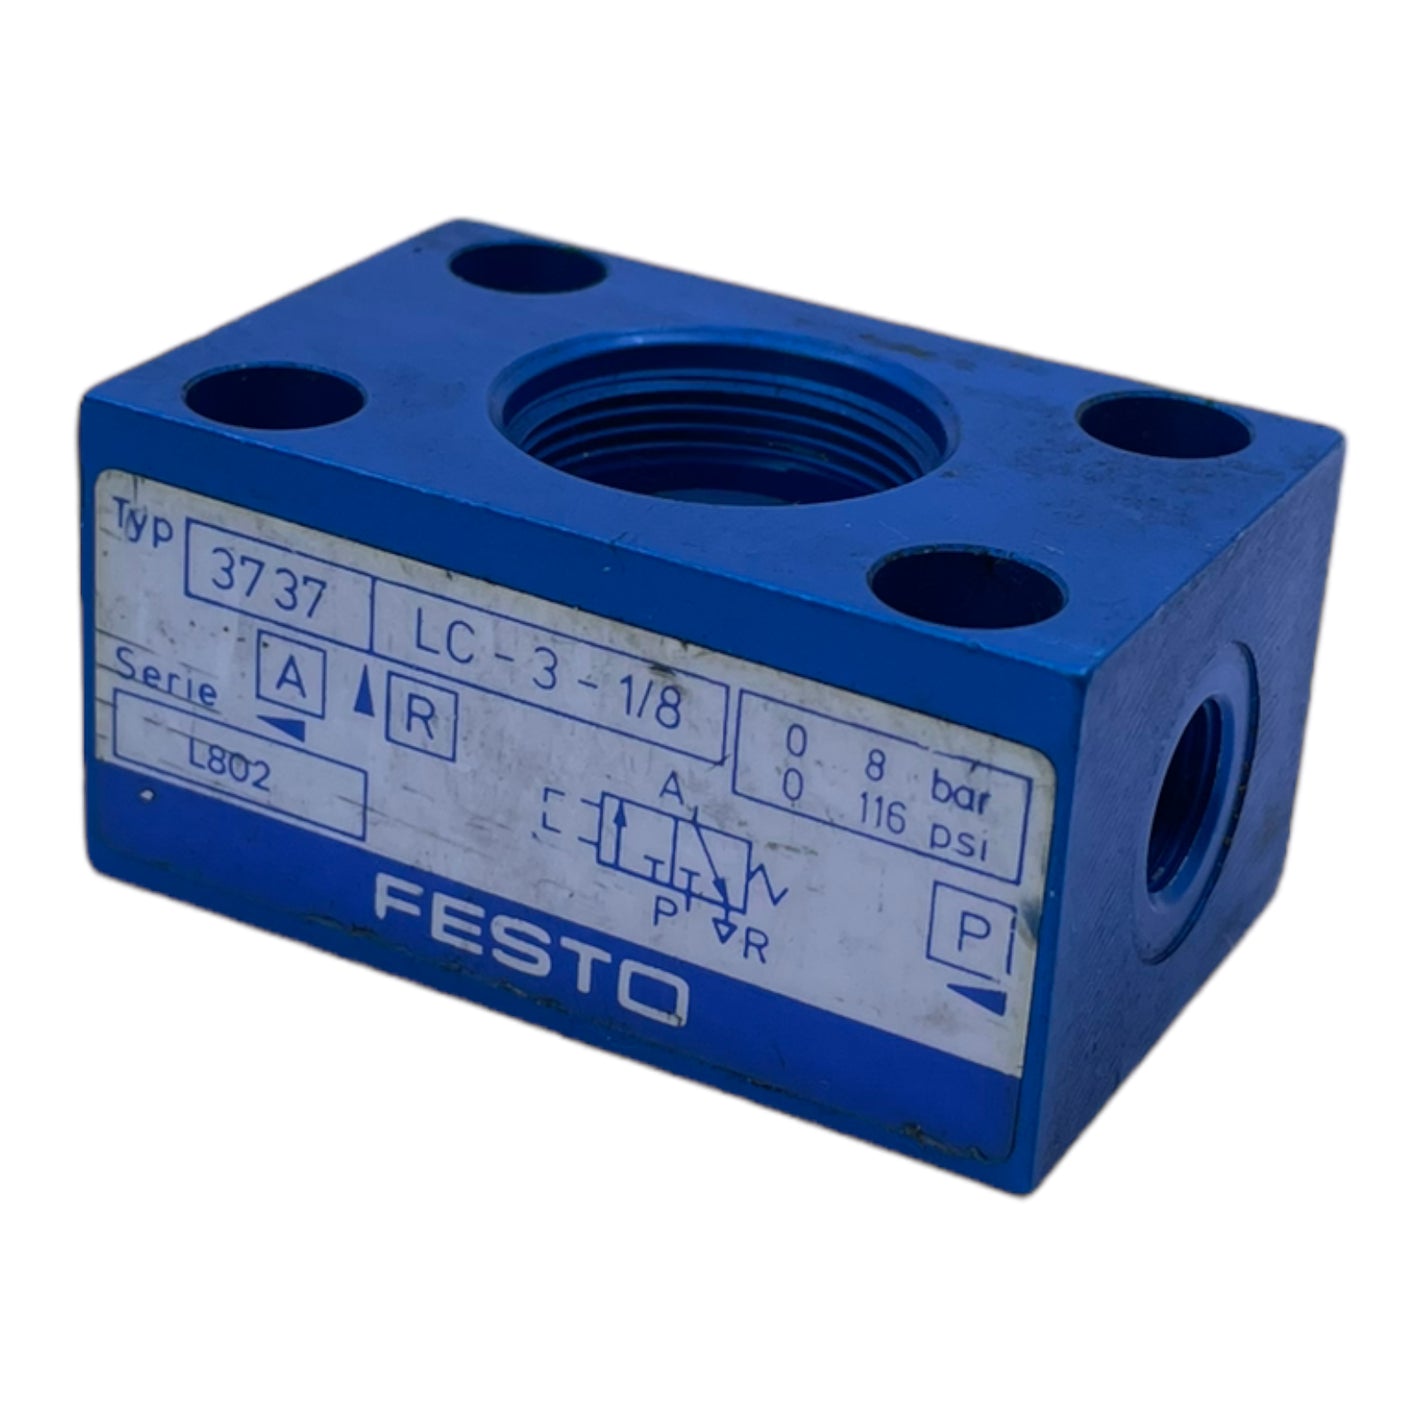 Festo LC-3-1/8 basic valve body 3737 0...8 bar 